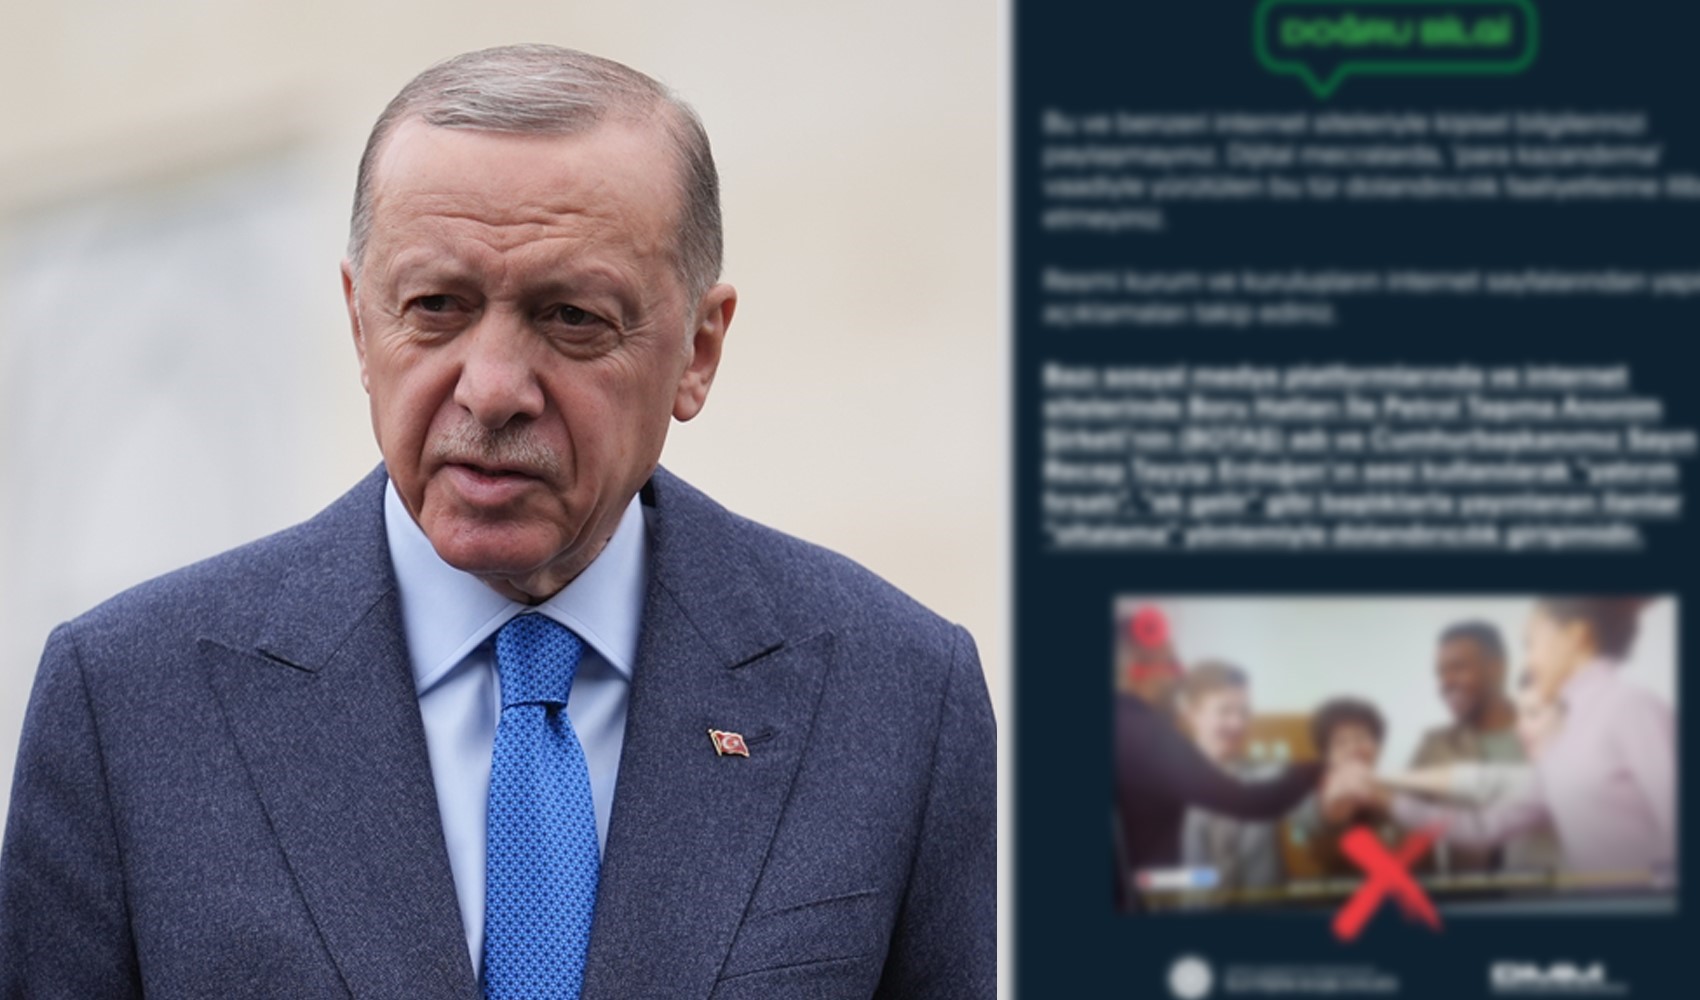 DMM'den 'Erdoğan' uyarısı: 'Sesini kullanarak dolandırıcılık yapıyorlar'